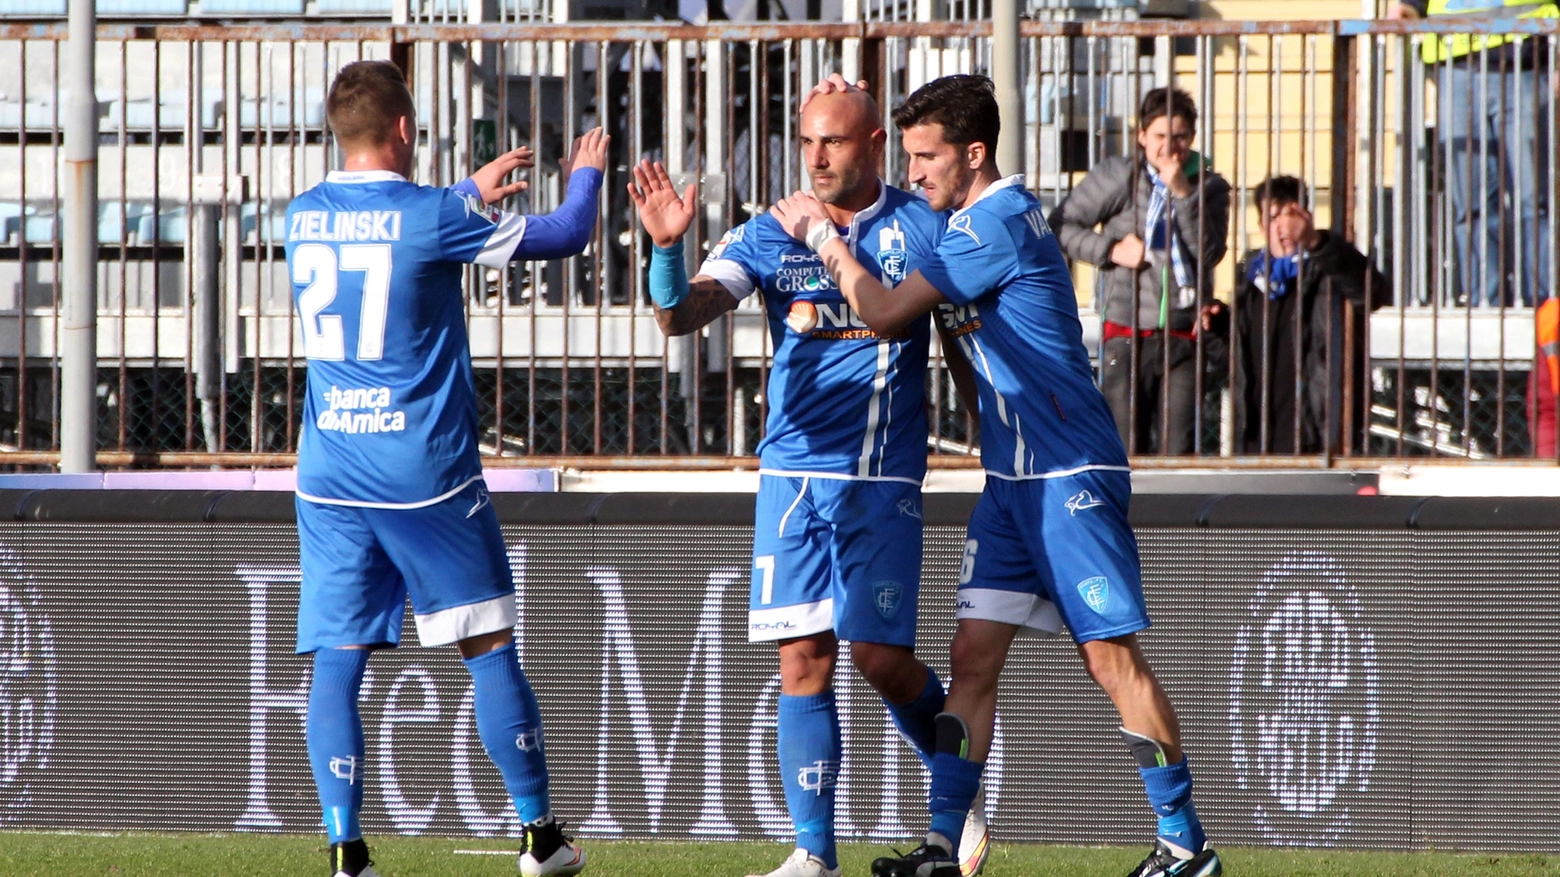 Gioia di Maccarone dopo il gol del 3-0 (Gianni Nucci/Fotocronache Germogli)